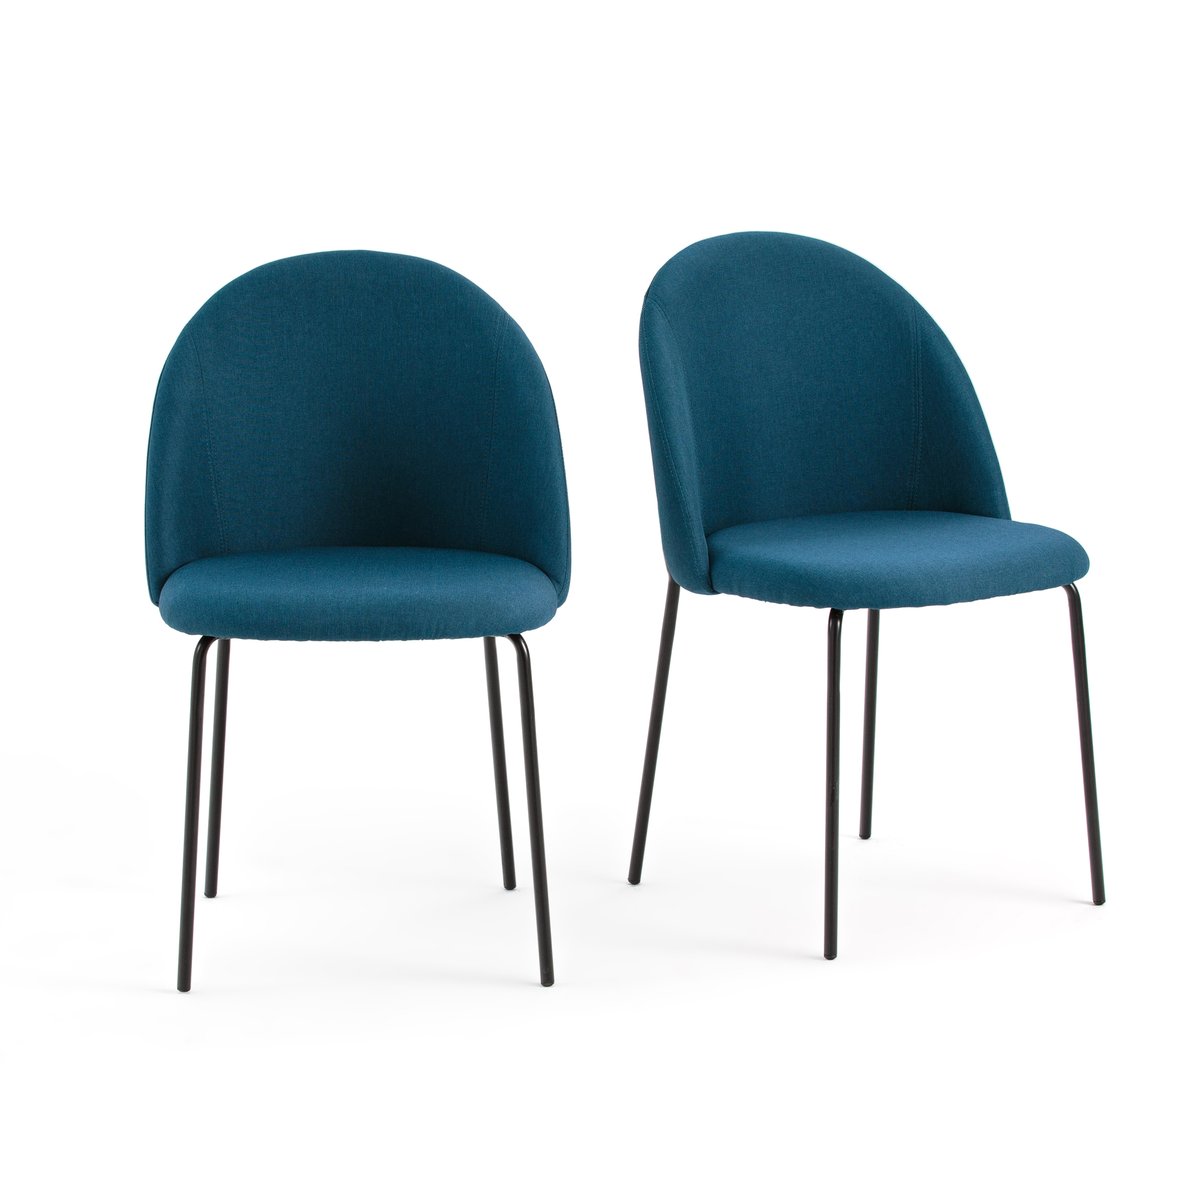 Комплект из 2 стульев NORDIE La Redoute единый размер синий комплект из 2 плетеных стульев из ротанга musette единый размер синий